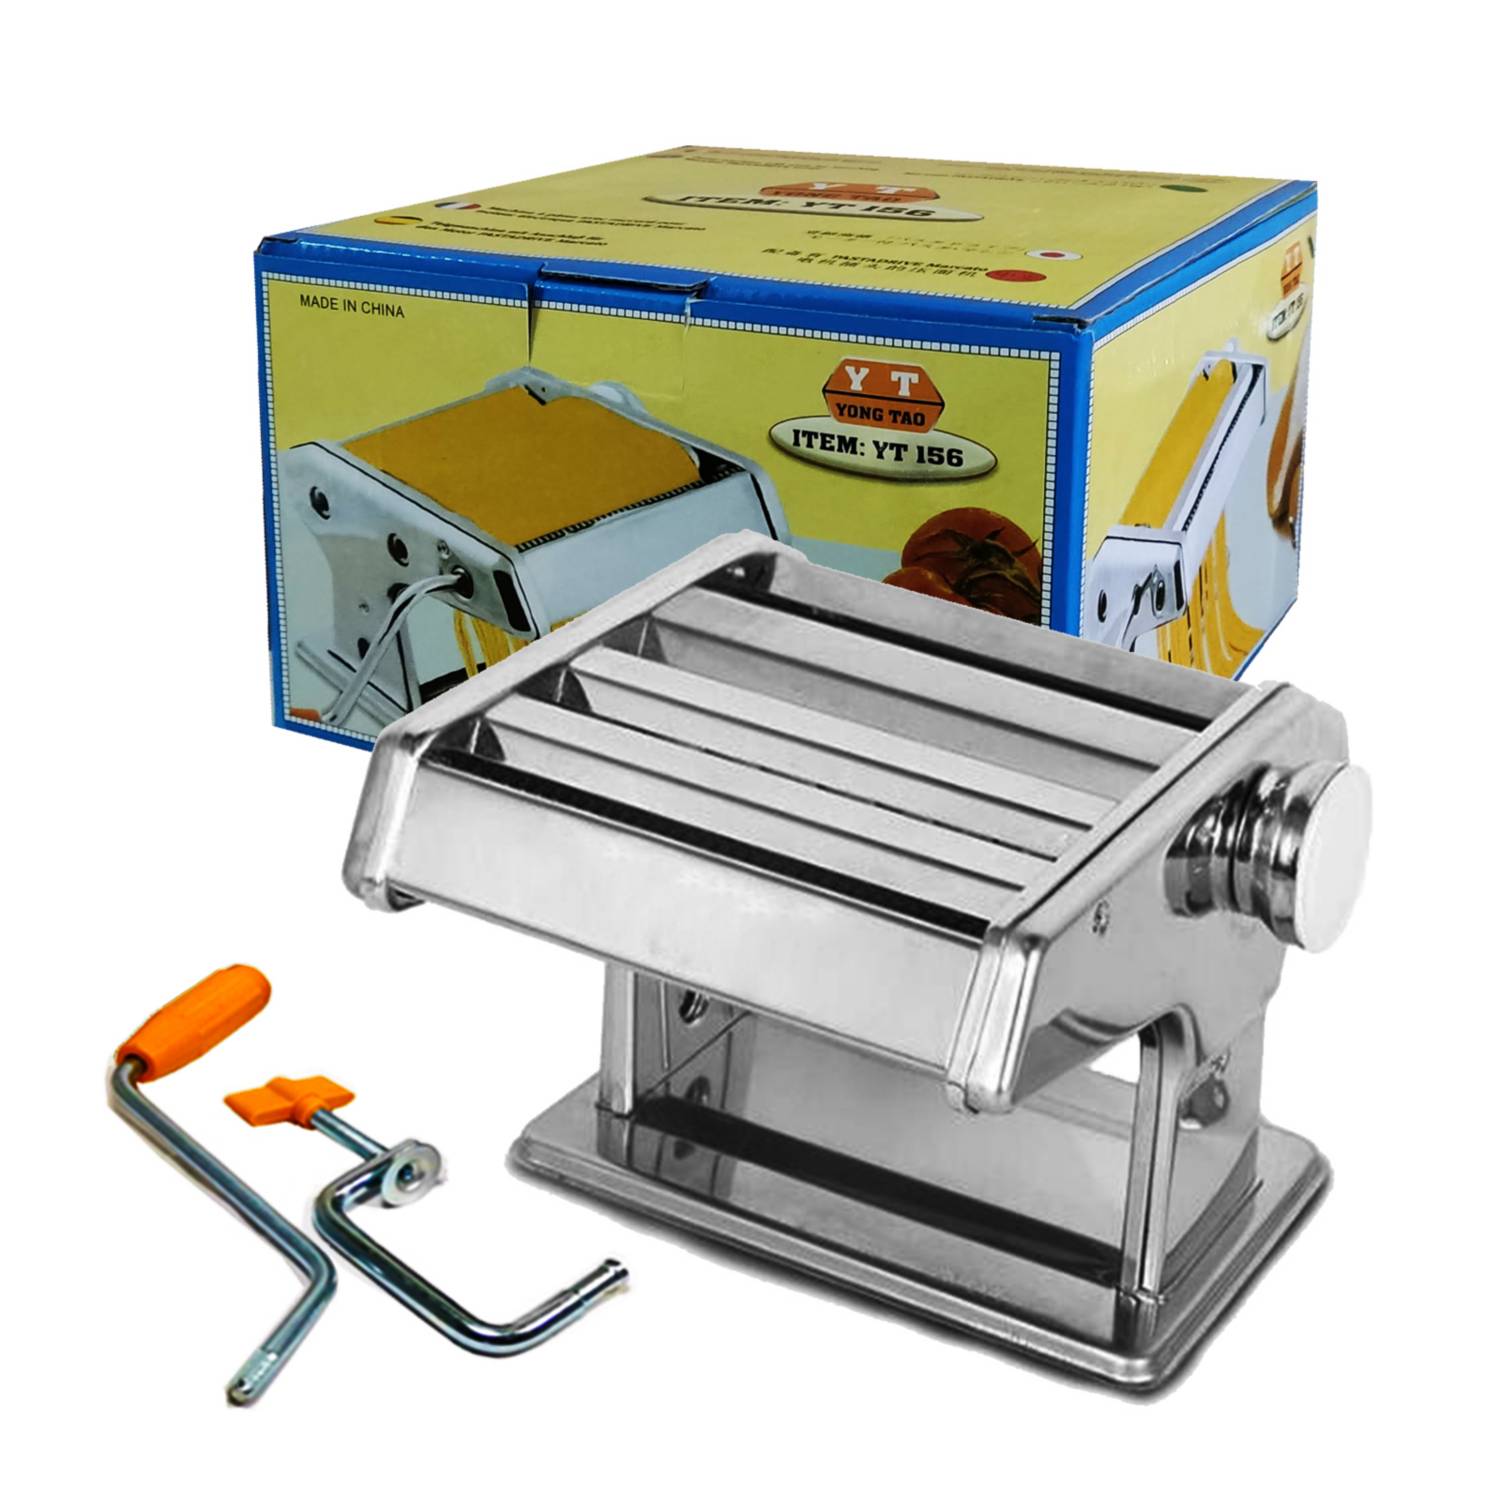 Maquina manual laminadora y cortadora para pasta - Corempro S.A